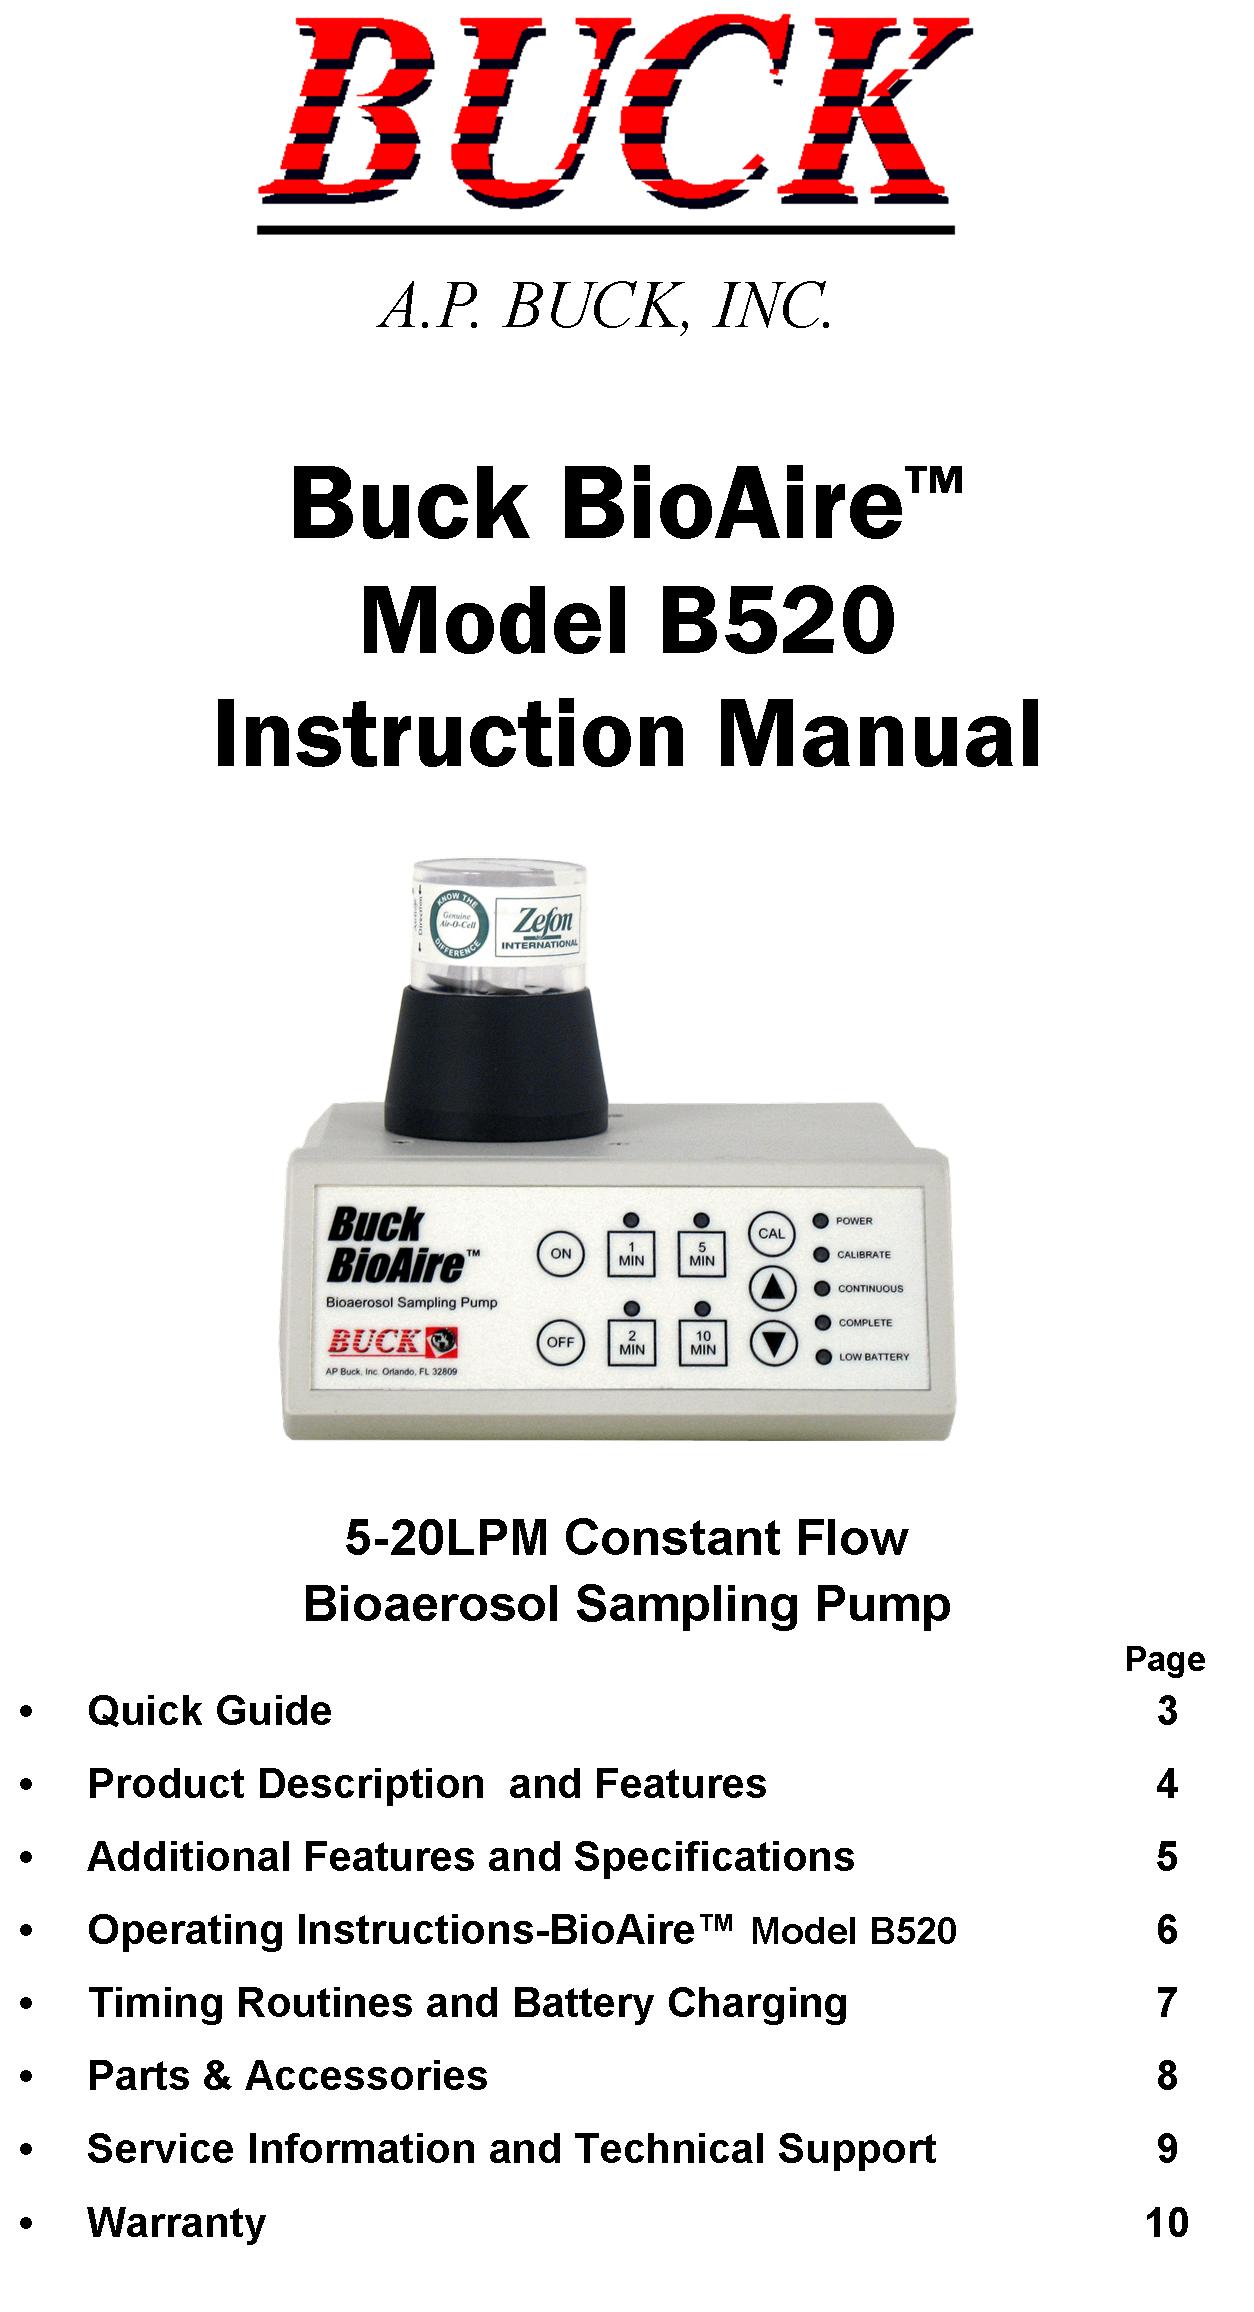 BioAire Series Pump Instruction Manual